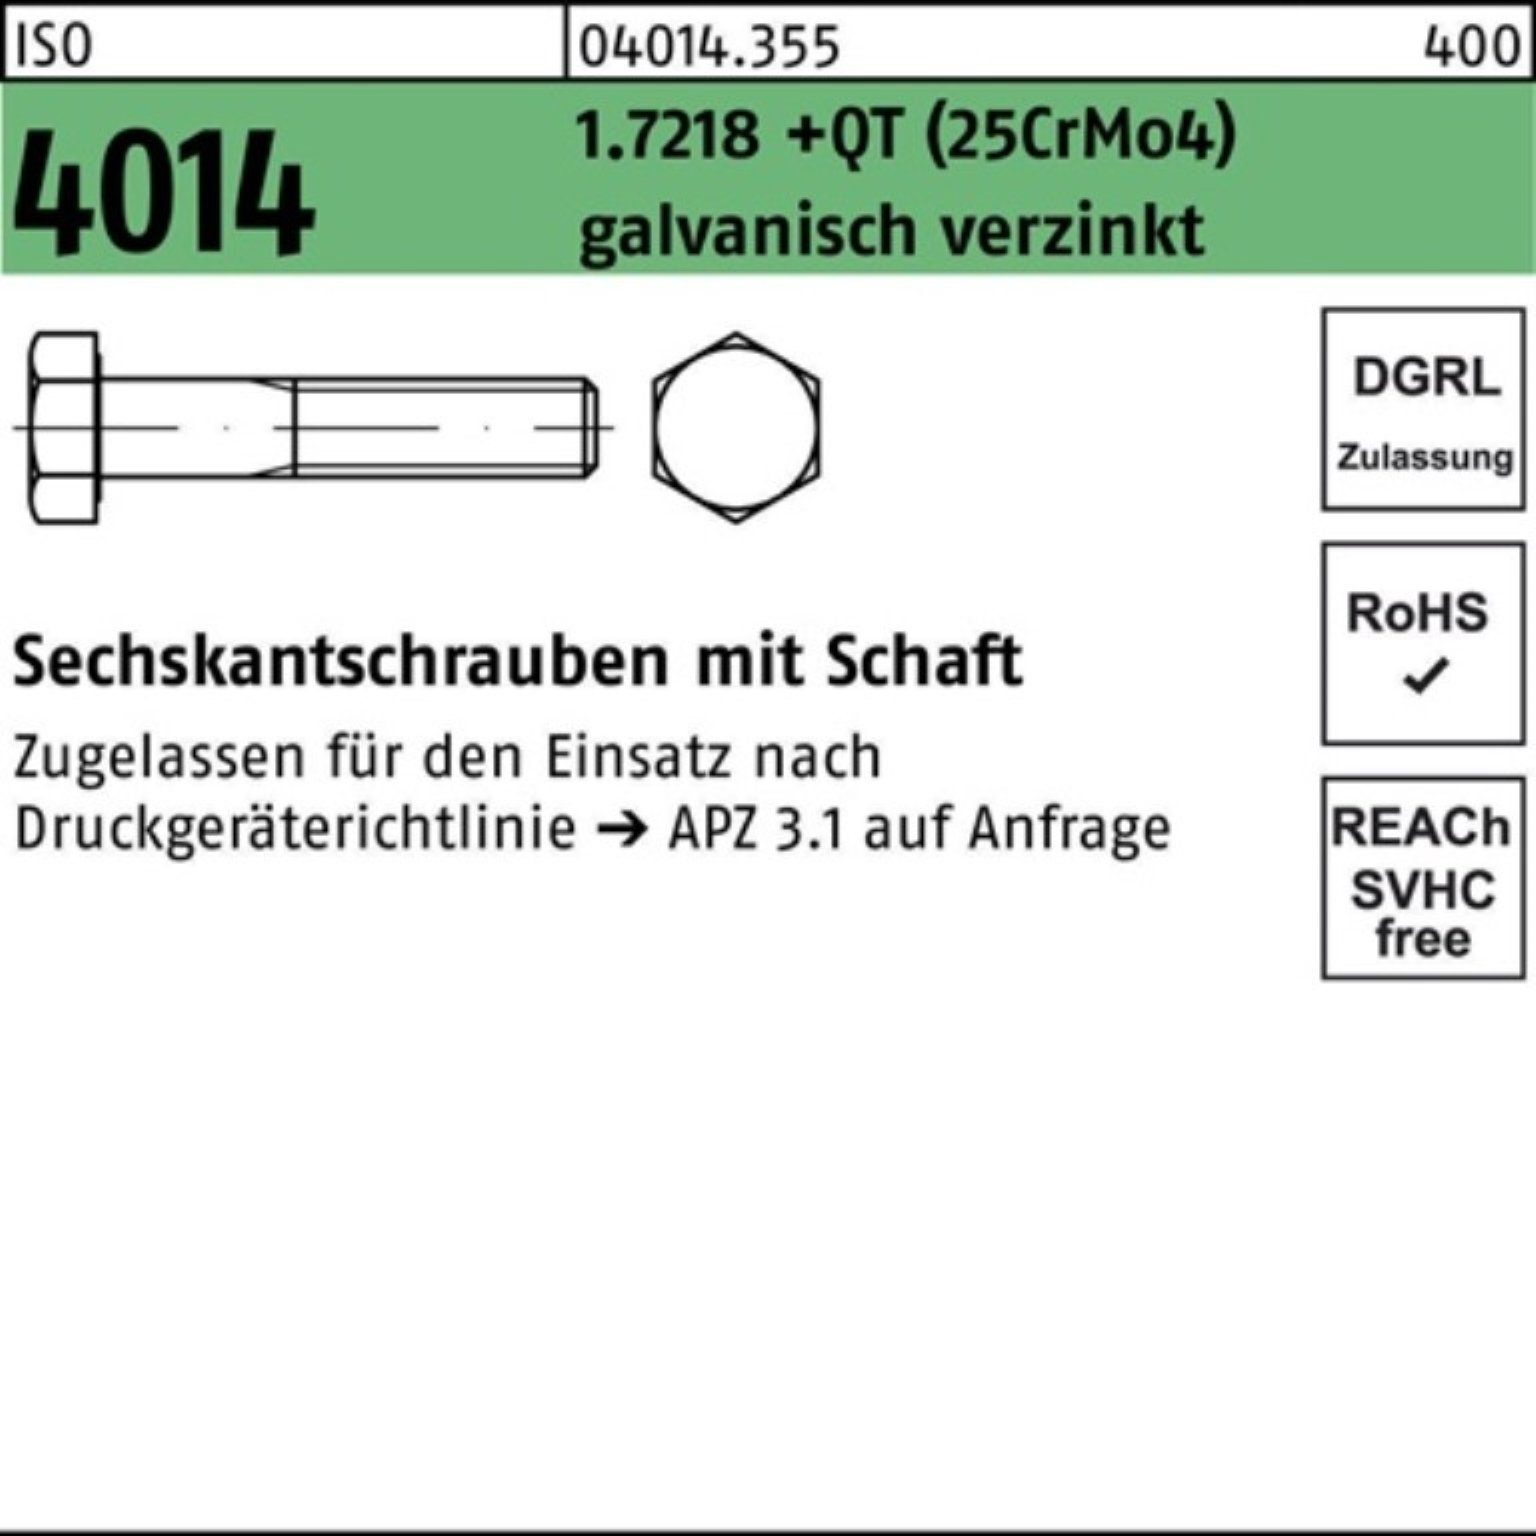 Bufab Sechskantschraube Pack M20x120 ISO 100er Schaft 4014 (25CrM 1.7218 +QT Sechskantschraube